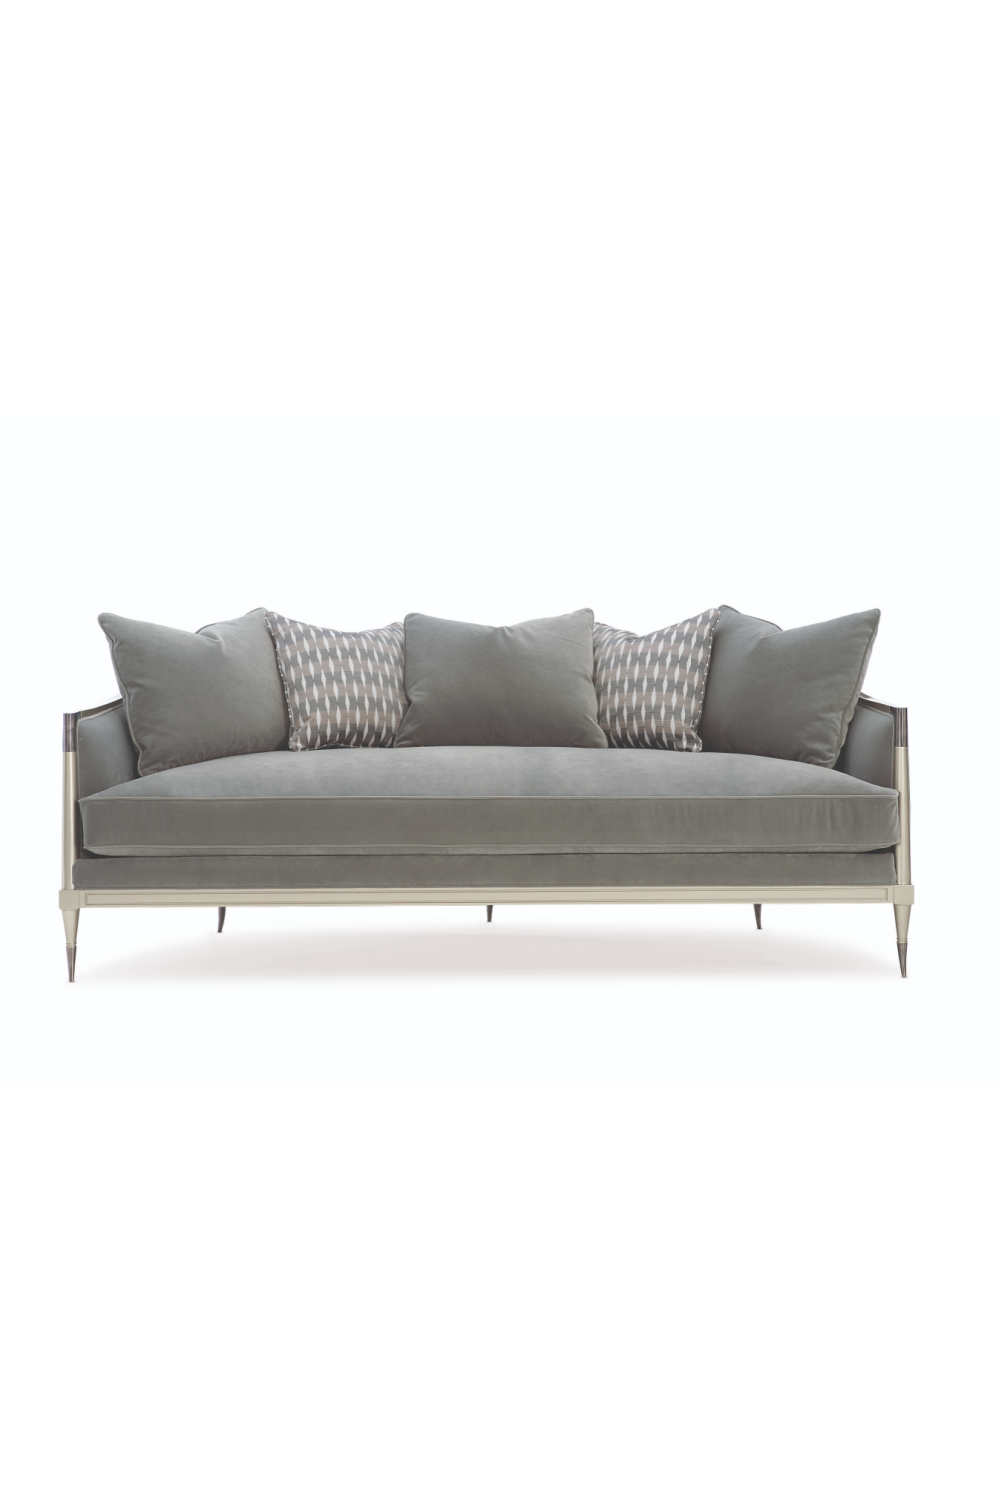 Gray Sofa With Cushions | Caracole Splash of Flash | Oroa.com